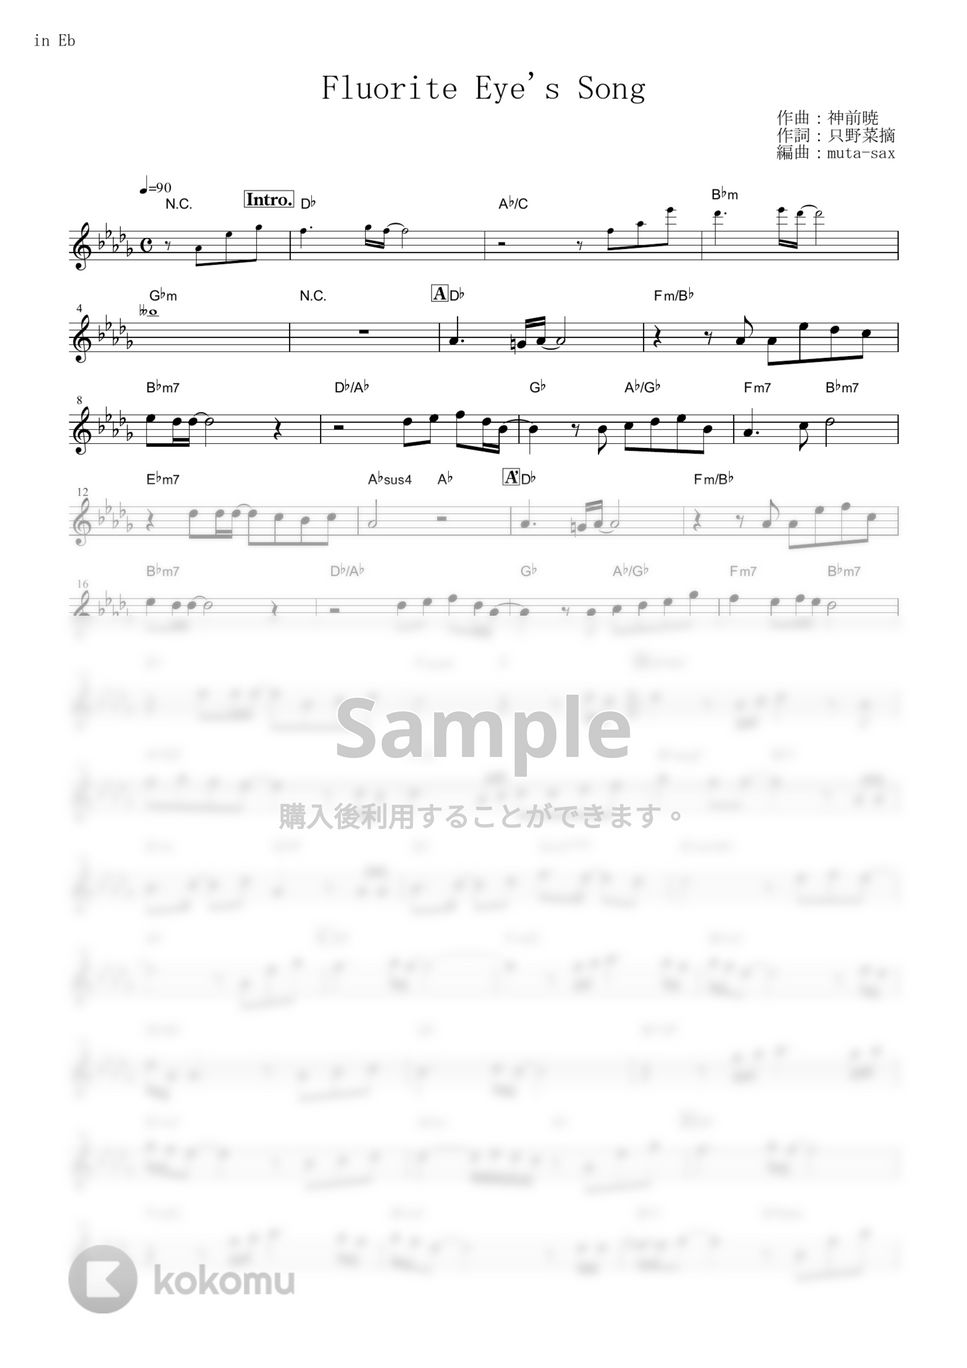 ヴィヴィ（Vo.八木海莉） - Fluorite Eye's Song (『Vivy -Fluorite Eye’s Song-』 / in Eb) by muta-sax